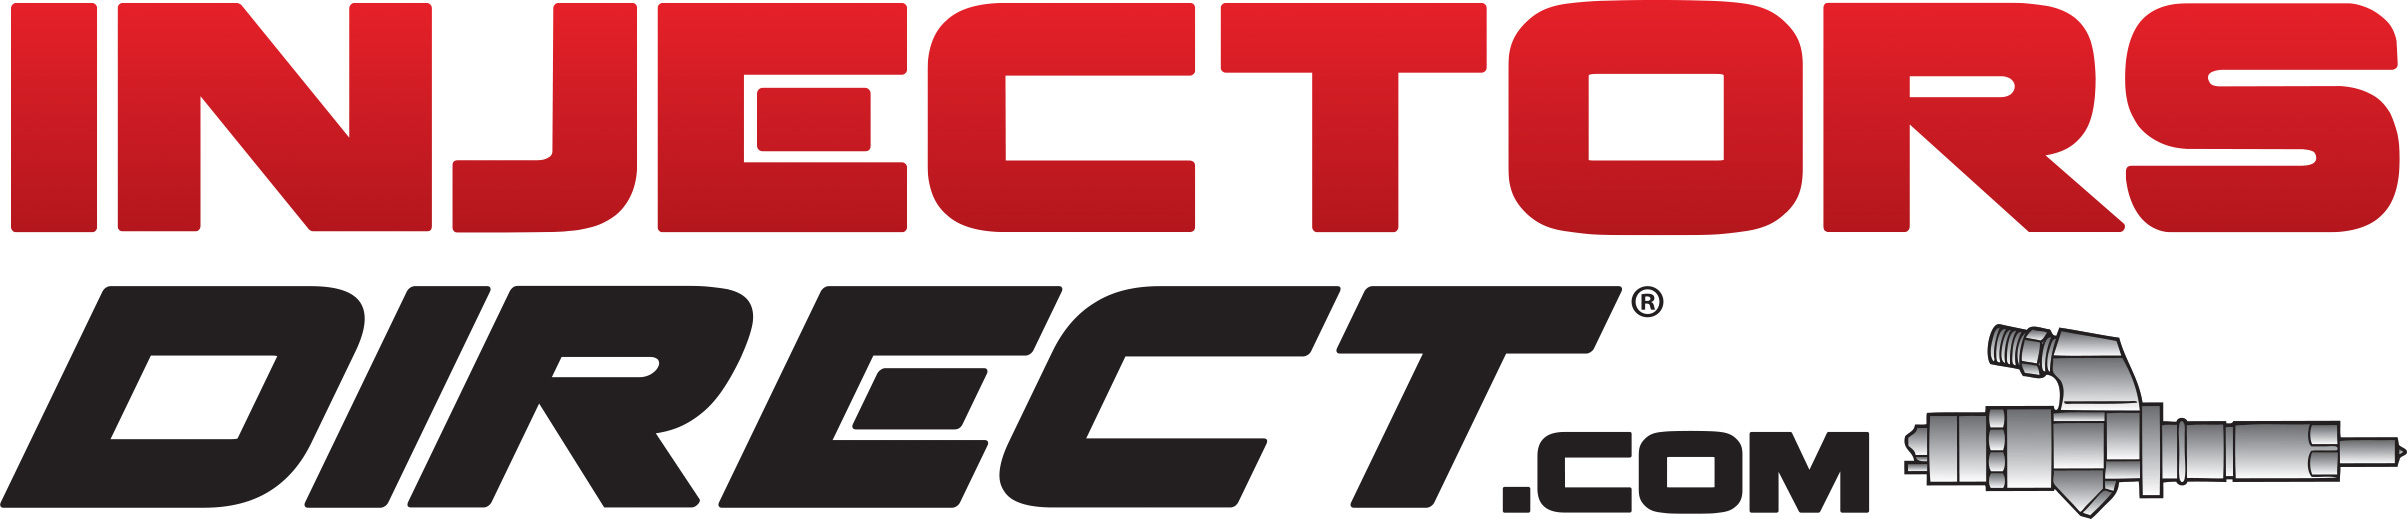 InjectorsDirect.com Logo